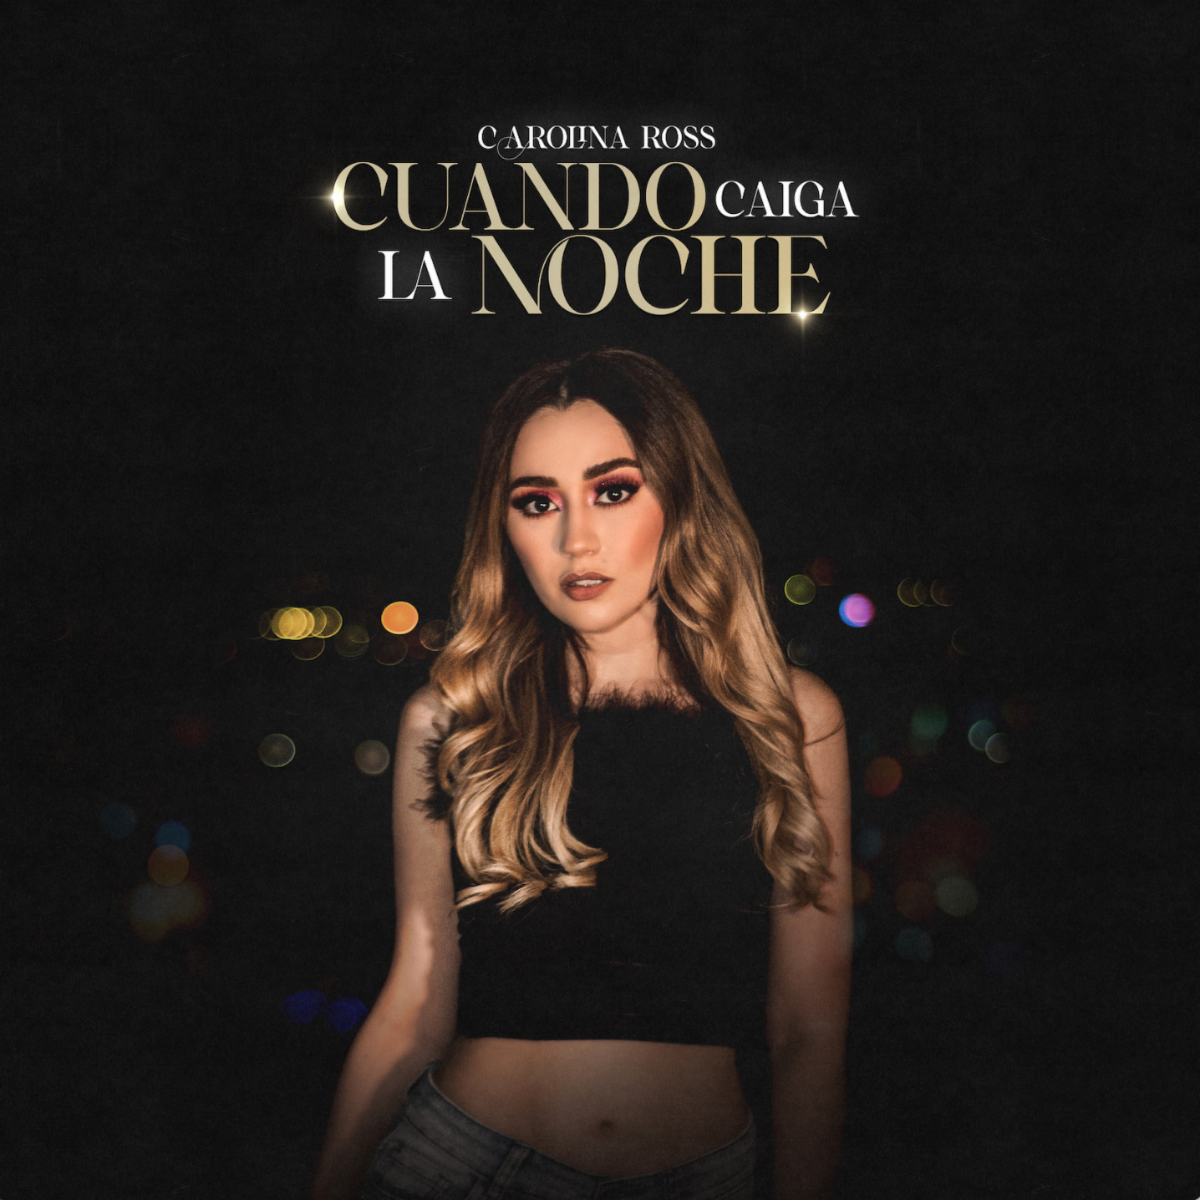 CAROLINA ROSS estrena nuevo sencillo “Cuando Caiga La Noche”